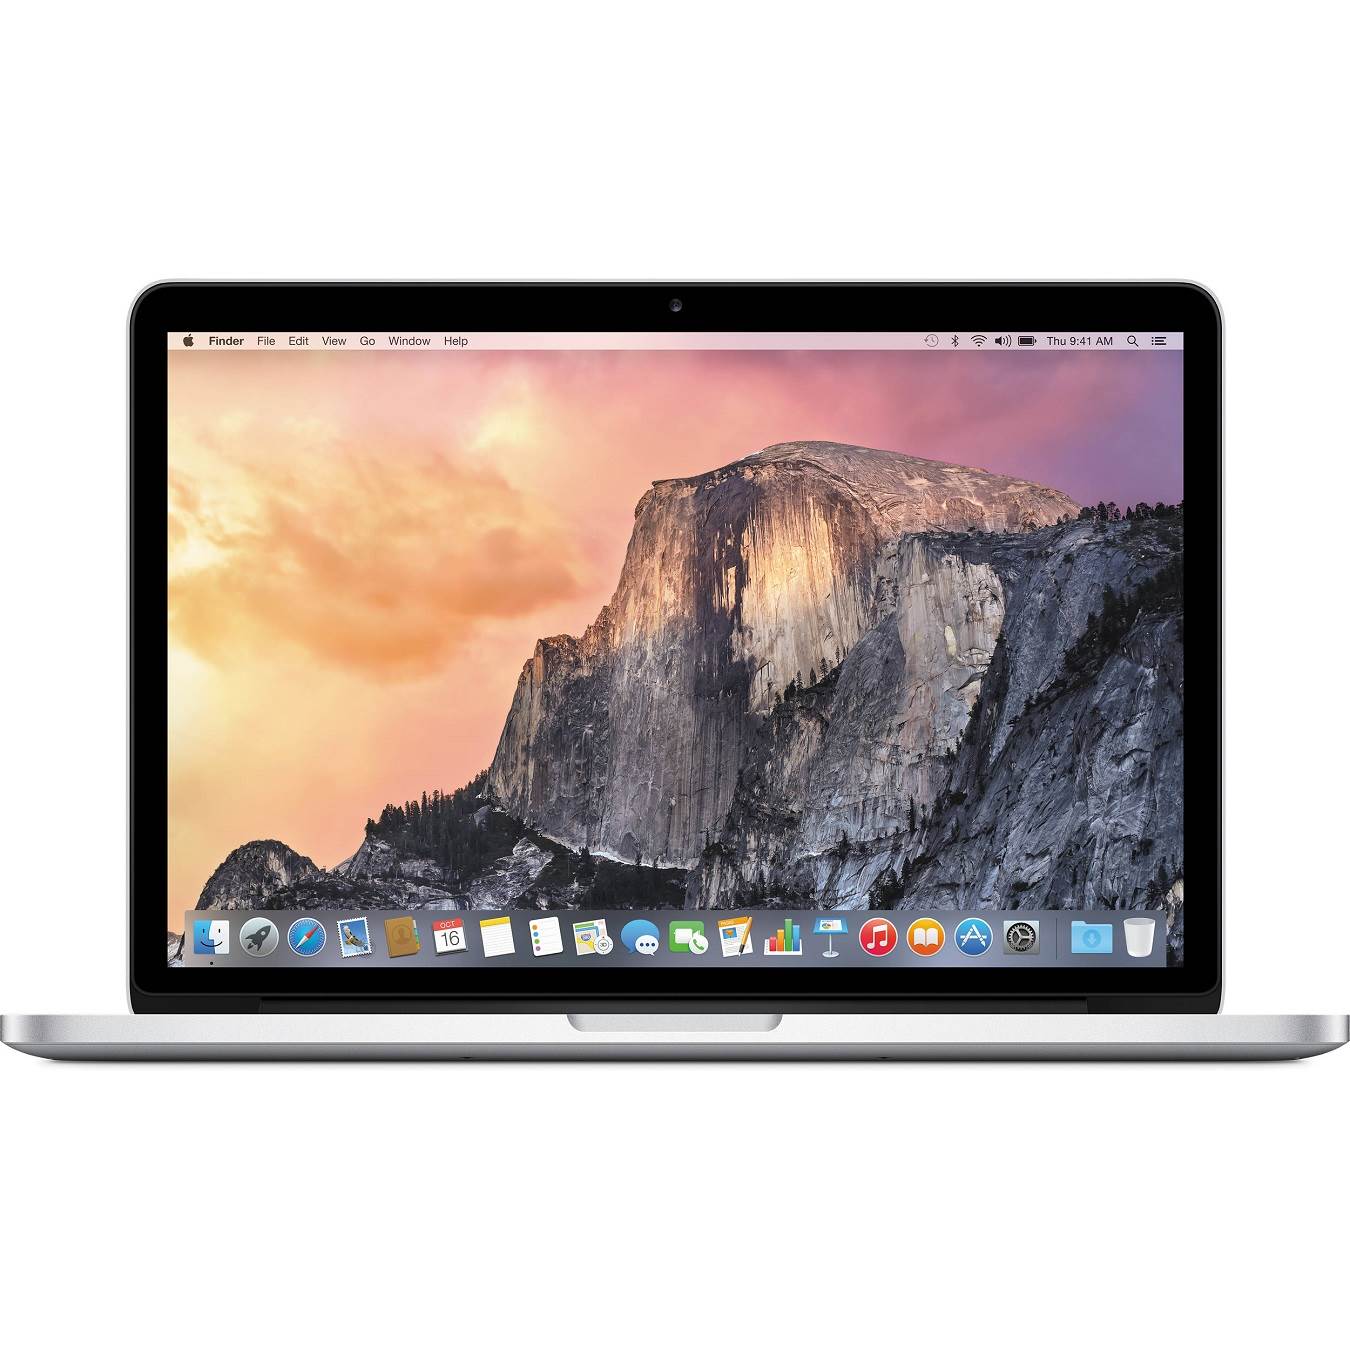 لپ تاپ استوک اپل مک بوک پرو مدل Apple MacBook Pro Late 2015 - 13 inch